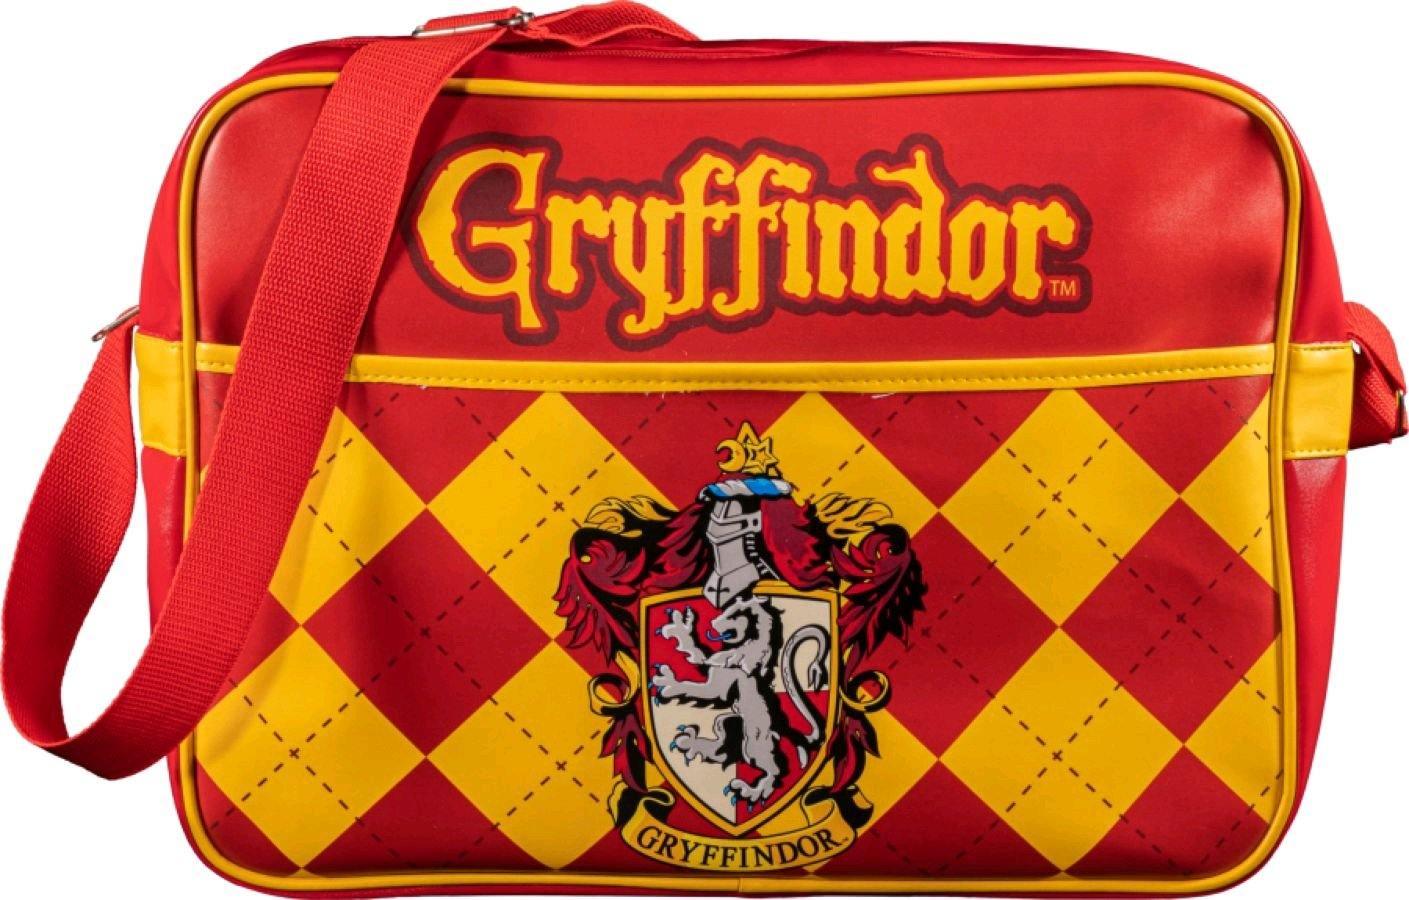 IKO1711 Harry Potter - Gryffindor Messenger Bag - Ikon Collectables - Titan Pop Culture